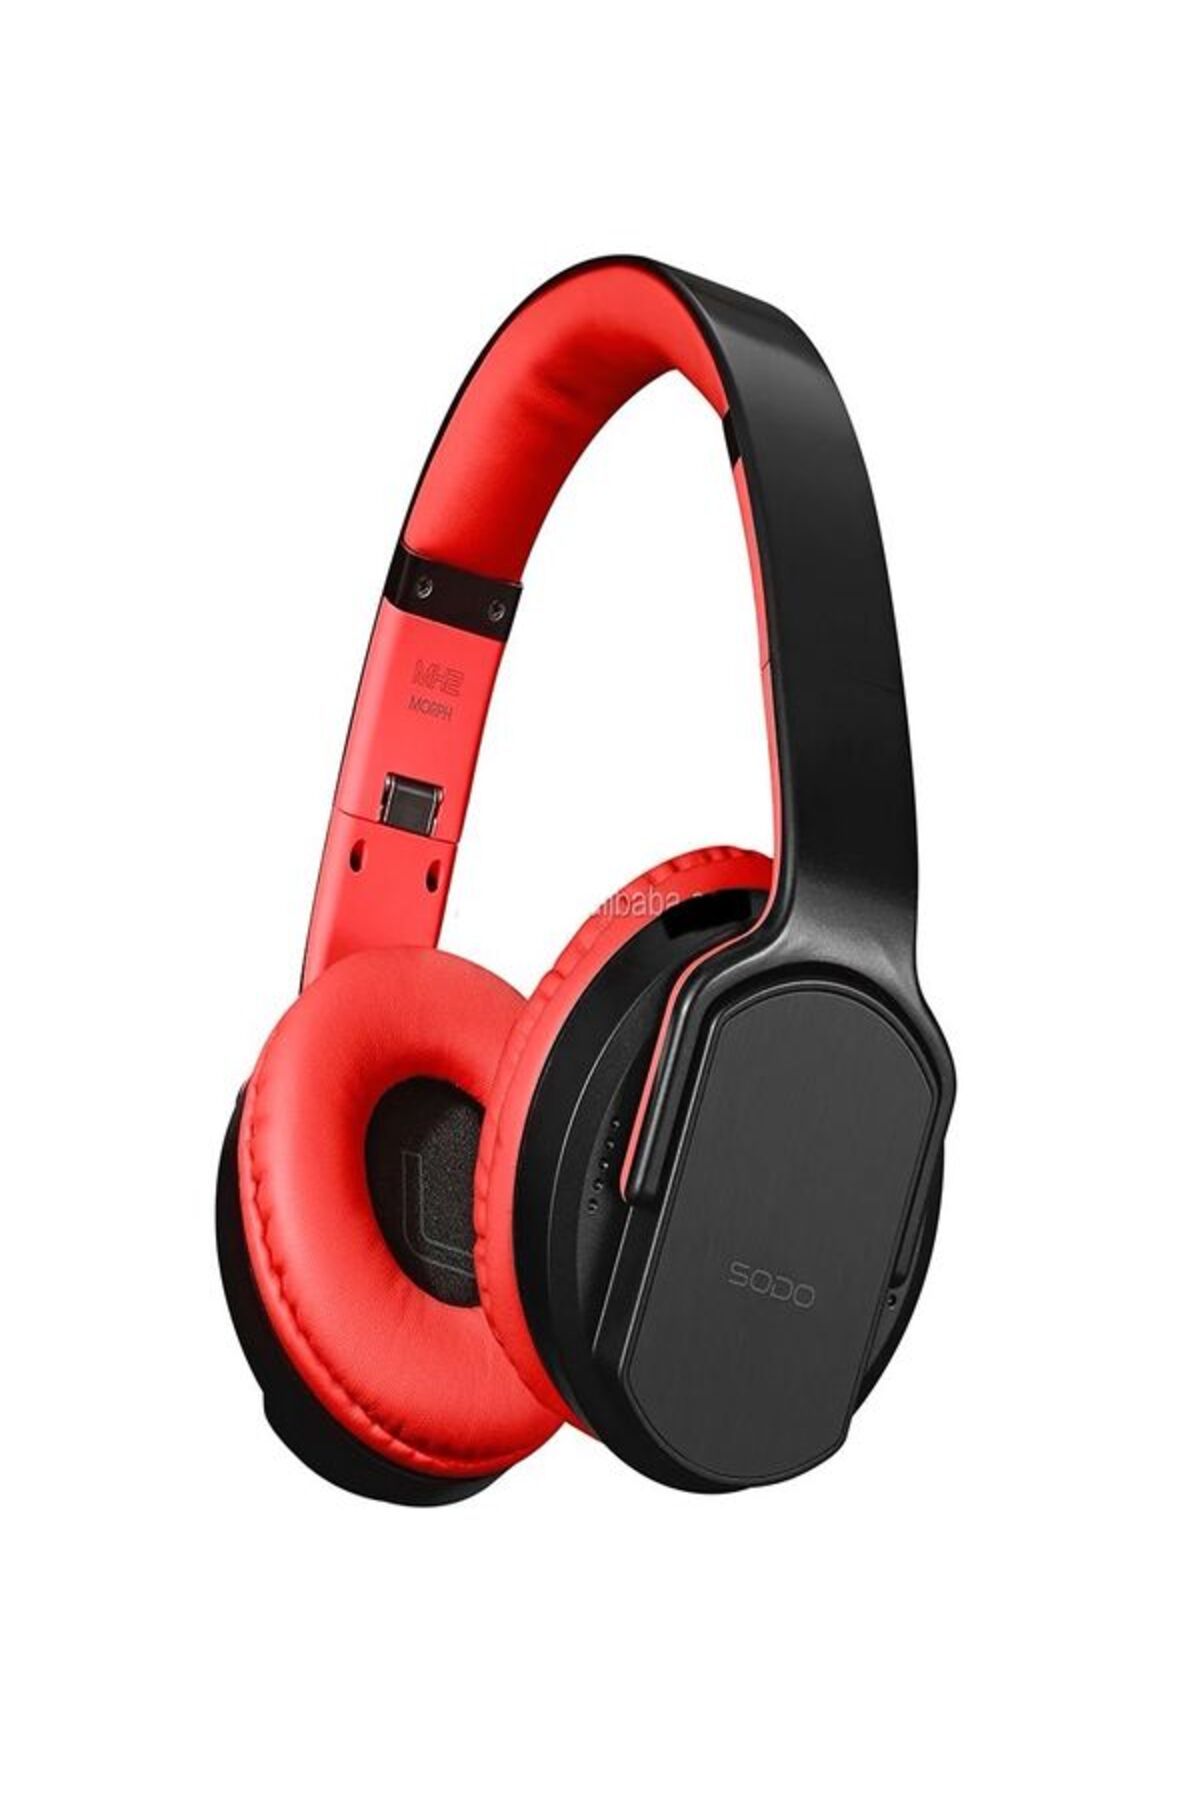 ÇELİKWORK Mh-12 NFC Kablosuz Kulaklık 2in1 Hoparlör Modu Hifi Stereo 5.0 Bluetooth Kulaklık Mikrofonlu